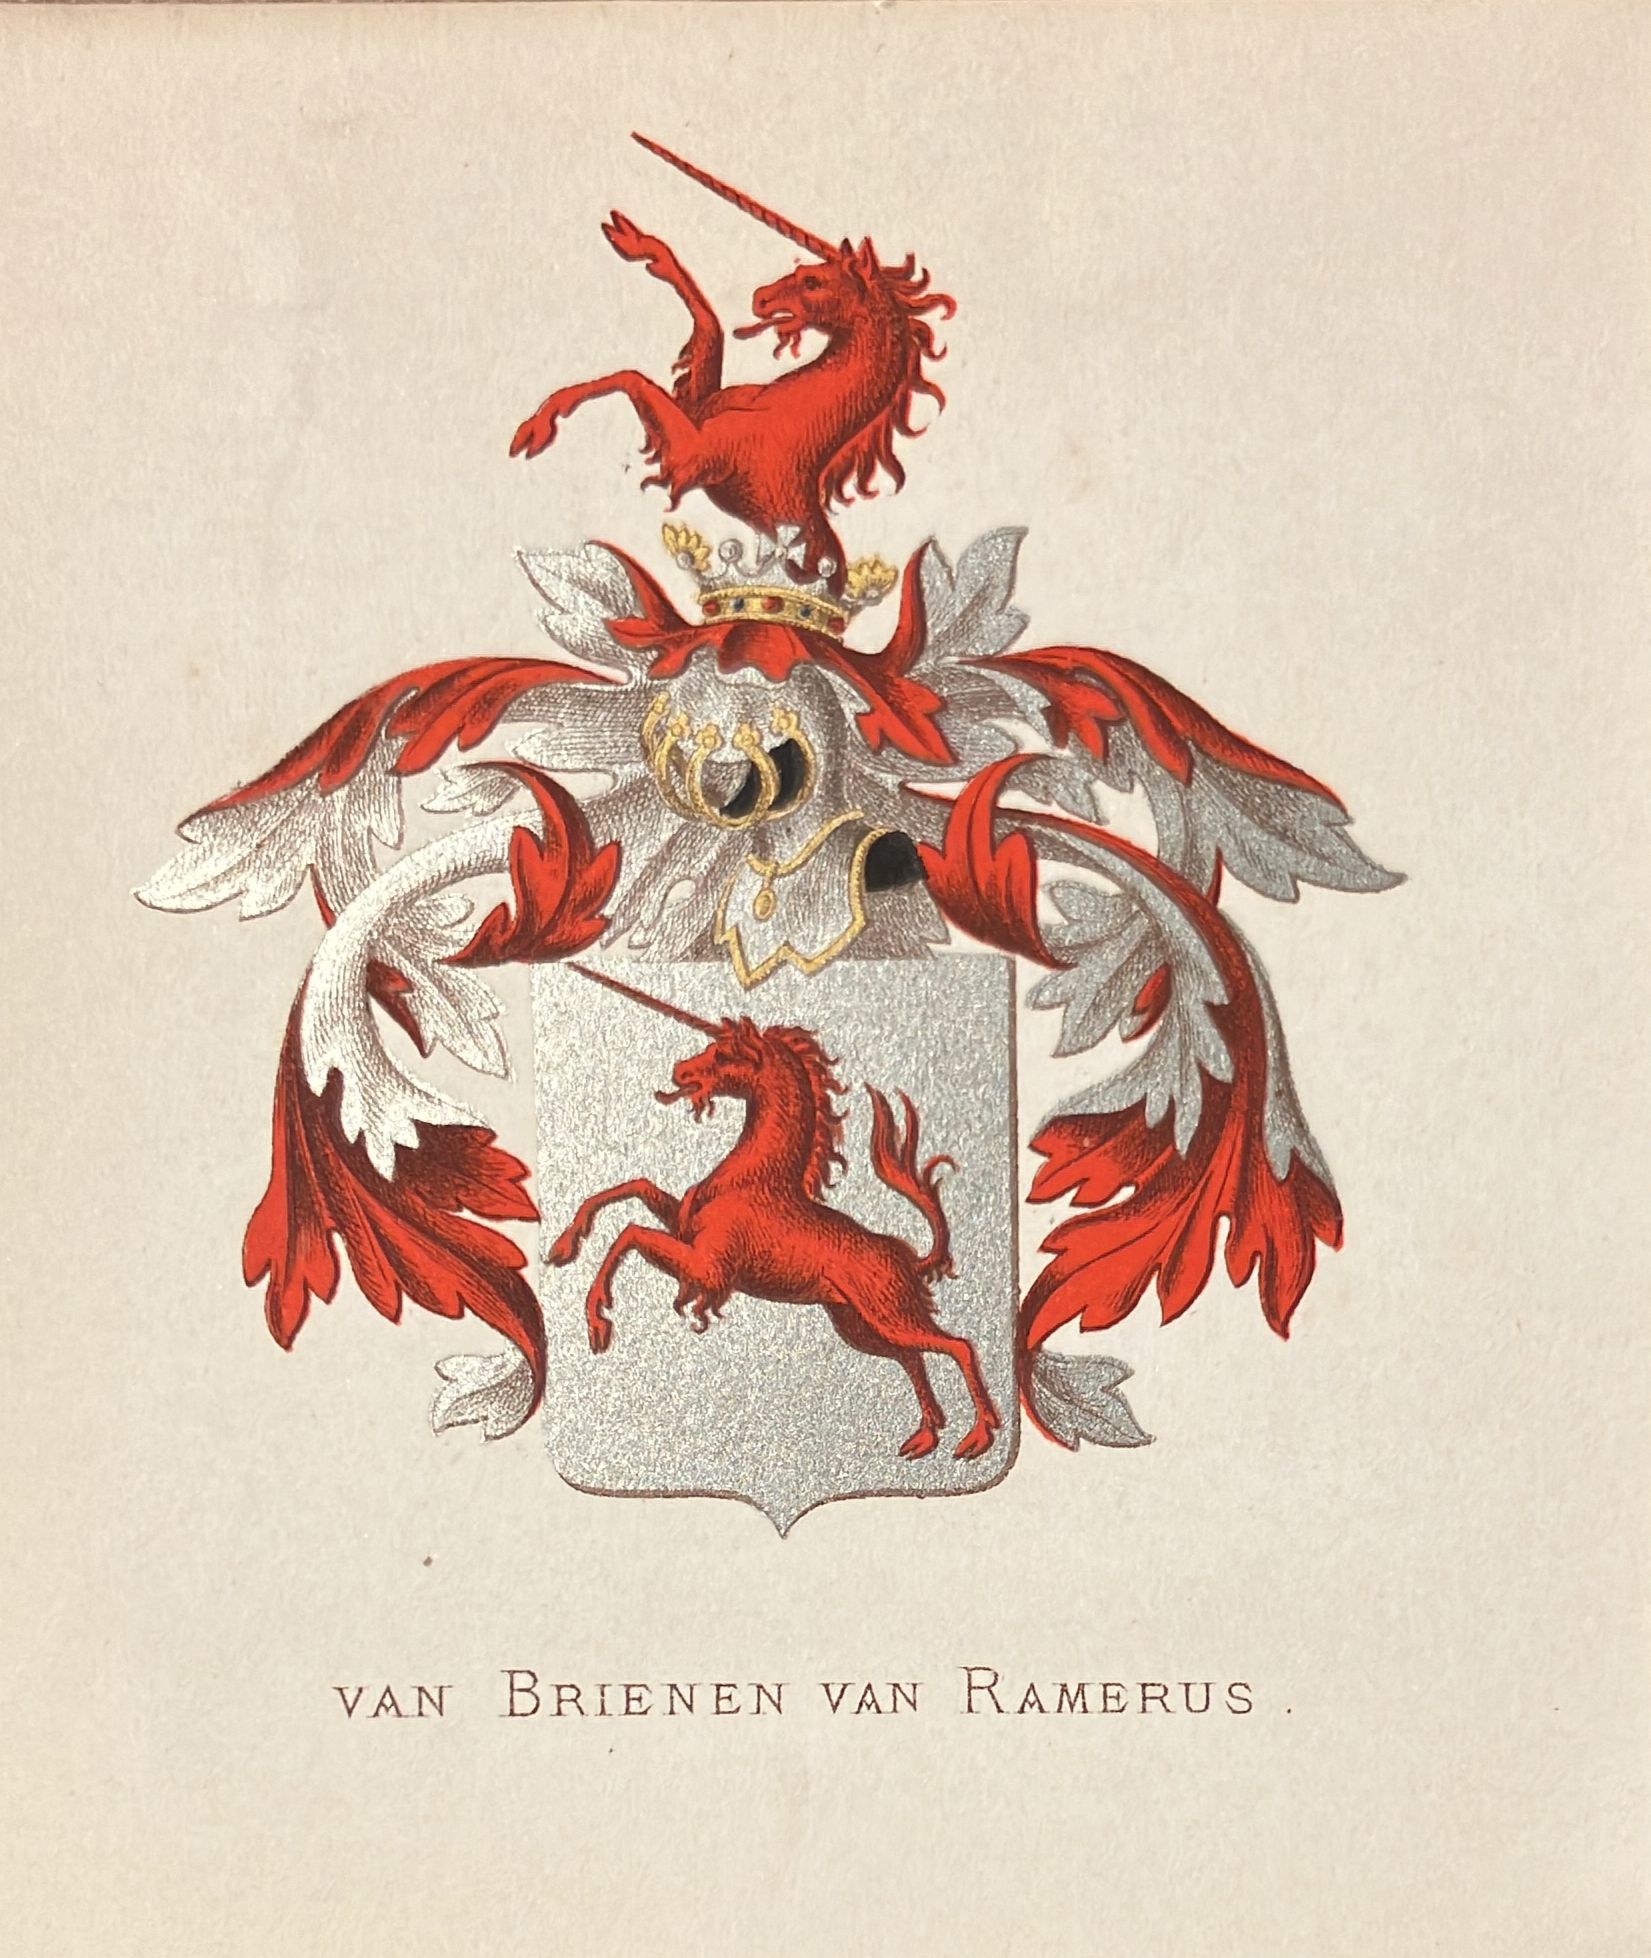 Coloured coat of arms of the van Brienen van Ramerus family